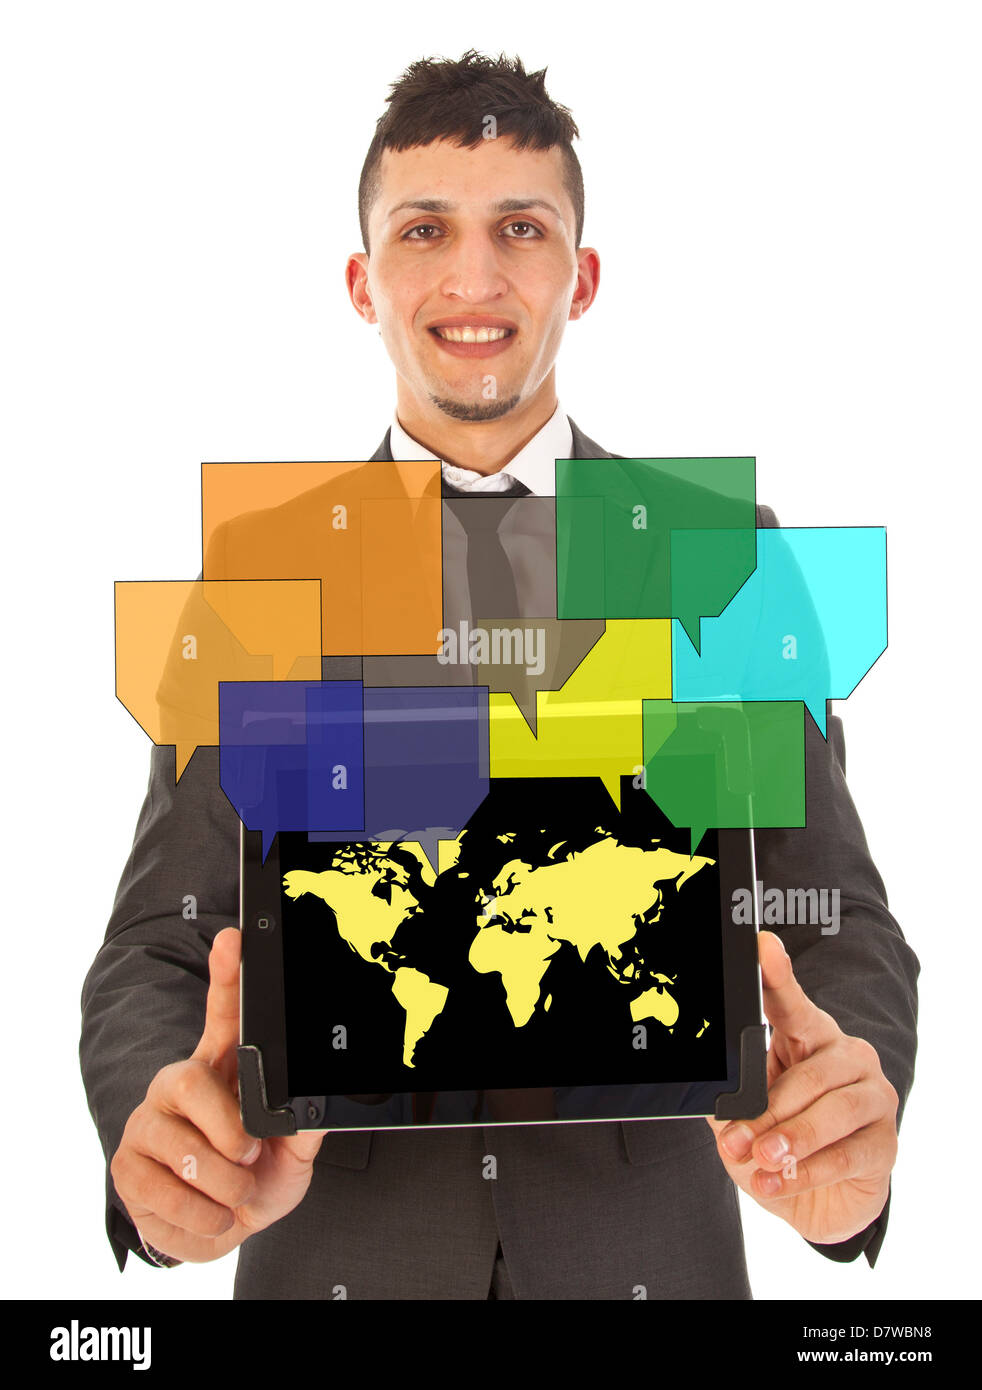 Young man holding tablet avec vos amis en ligne sur carte du monde Banque D'Images